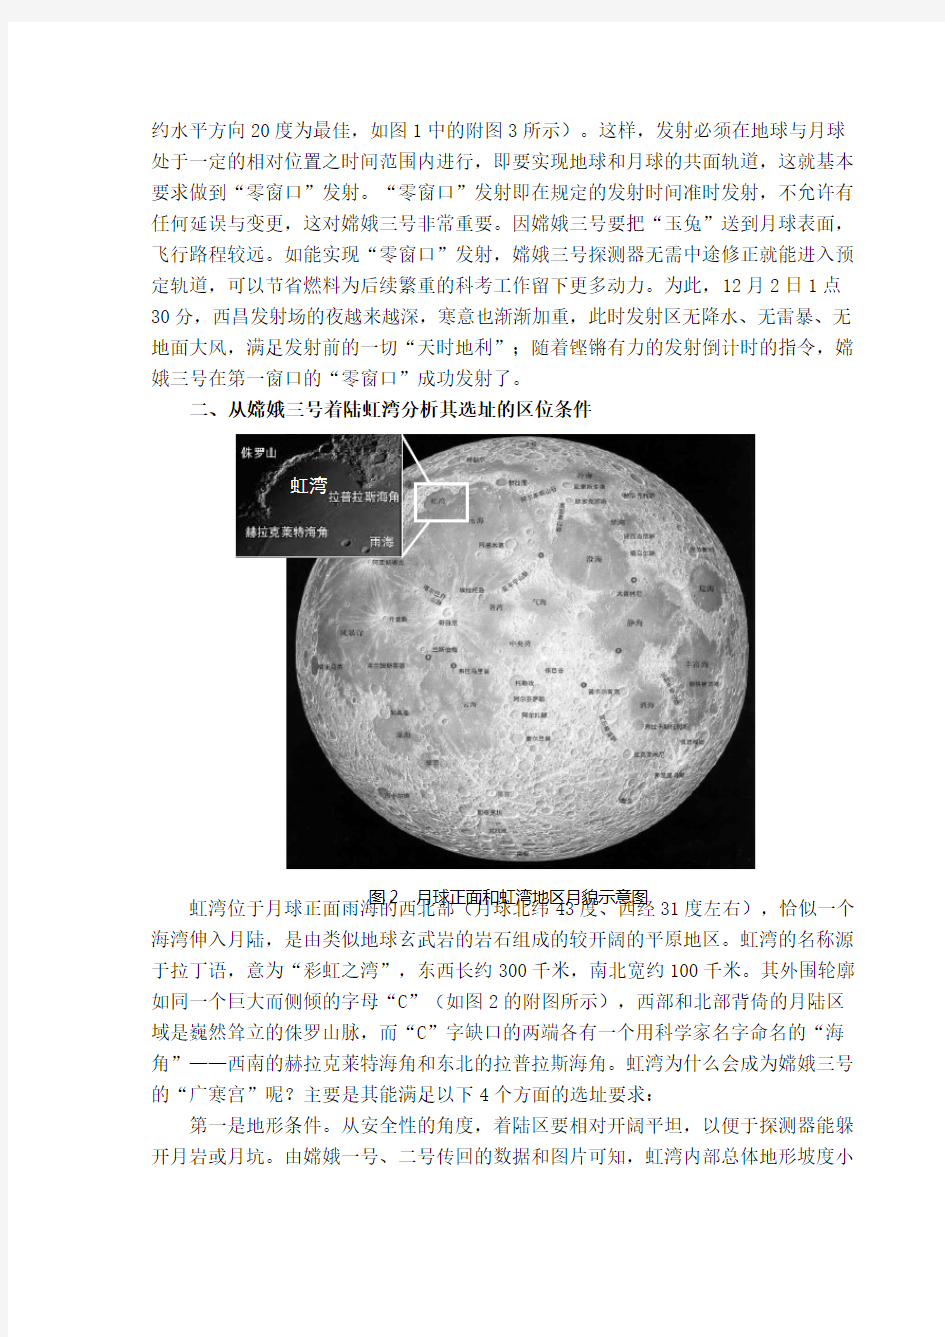 嫦娥三号探月工程中的地理元素解析(周义钦)